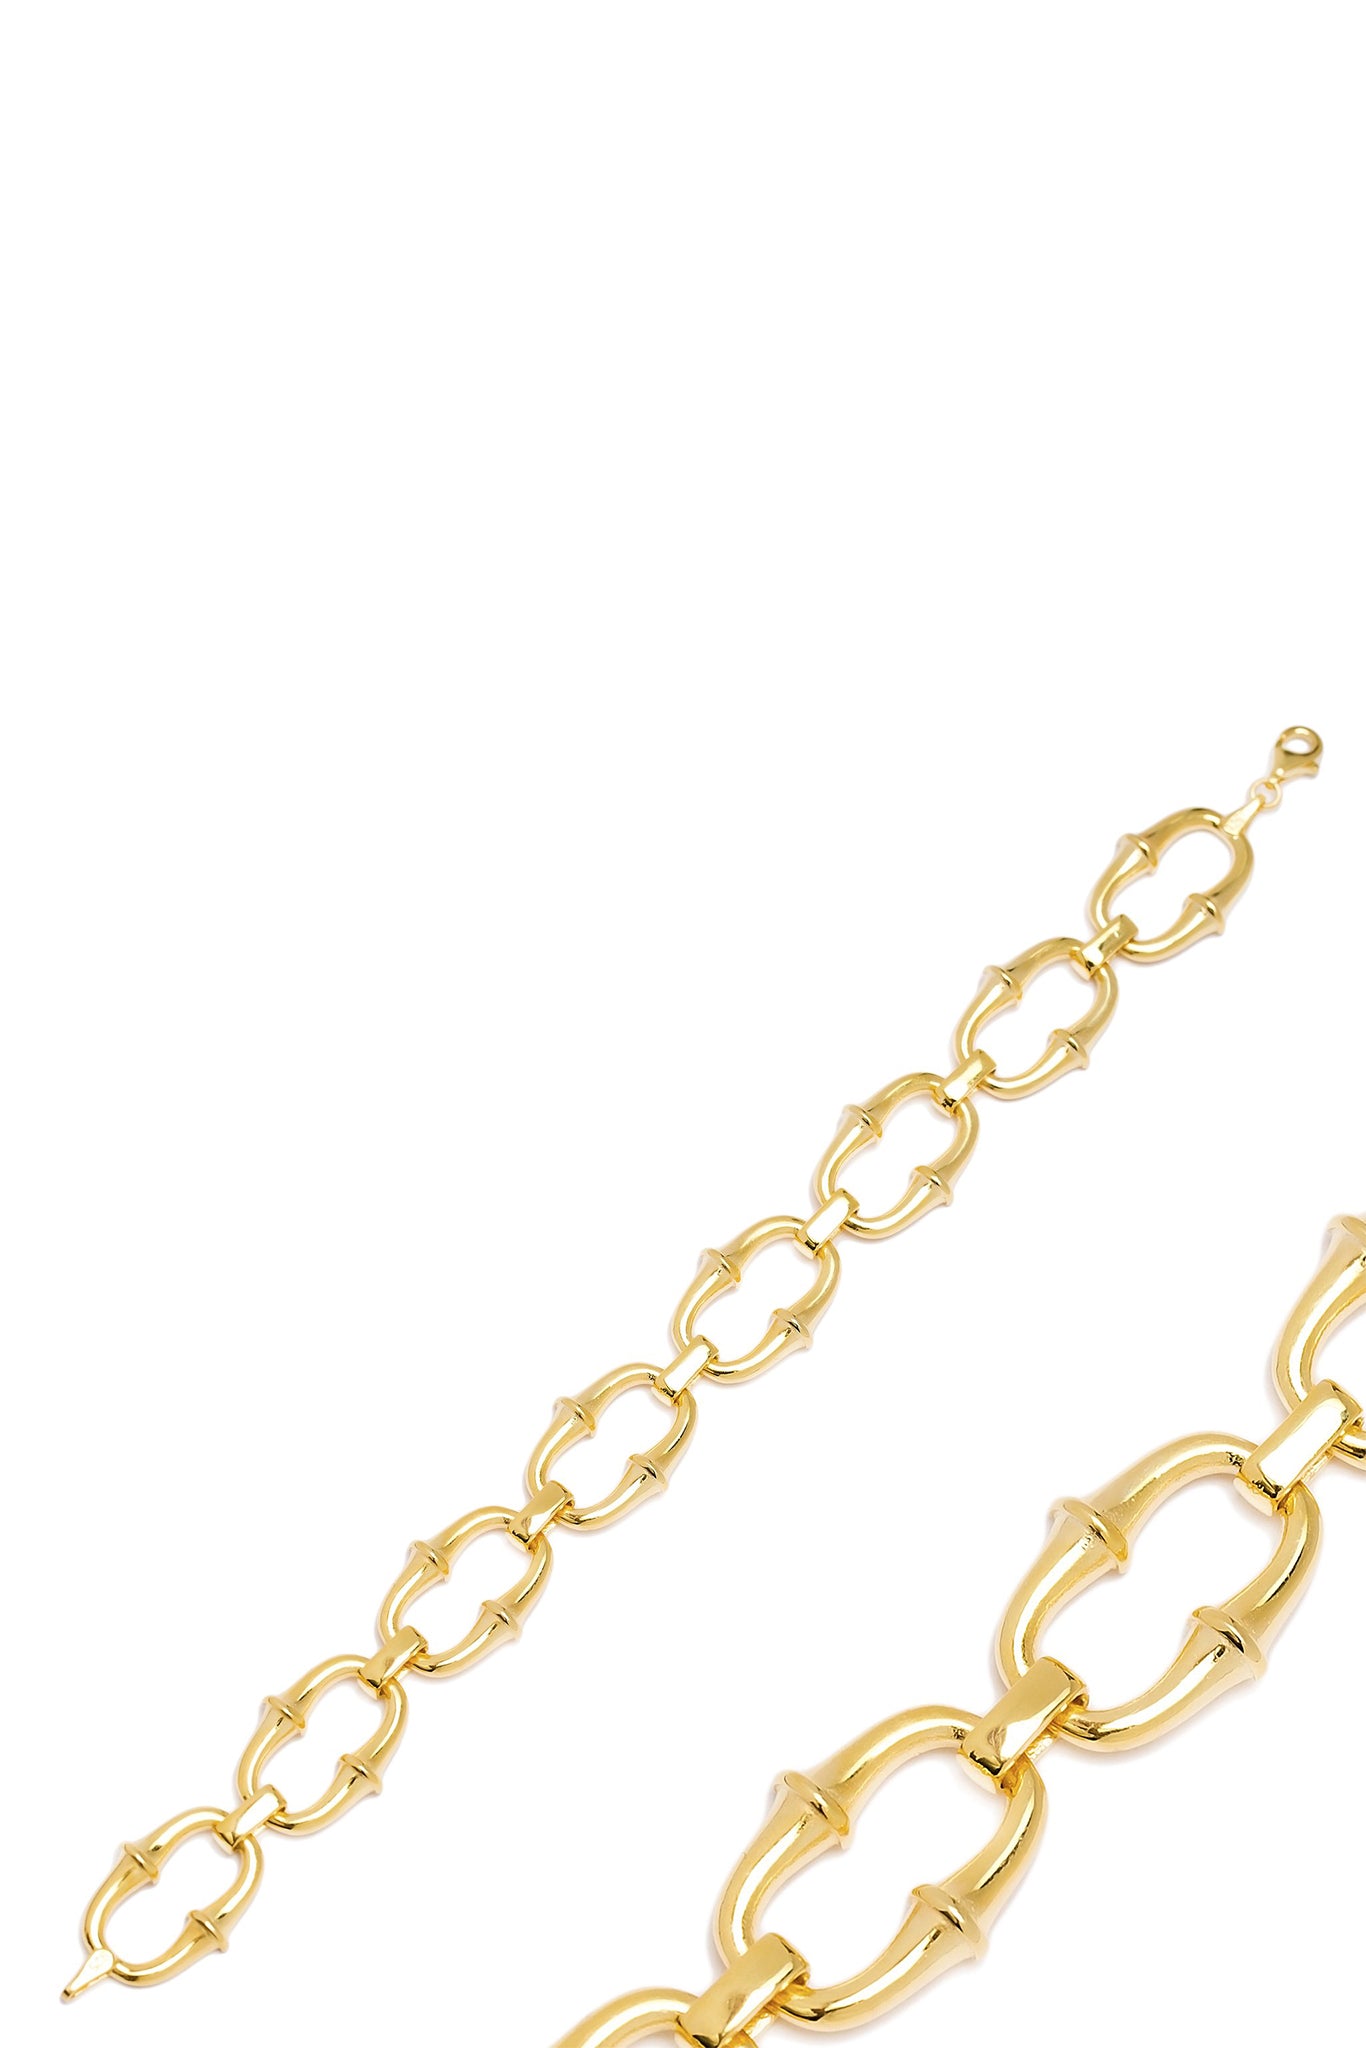 Airlie Bracelet - Gold